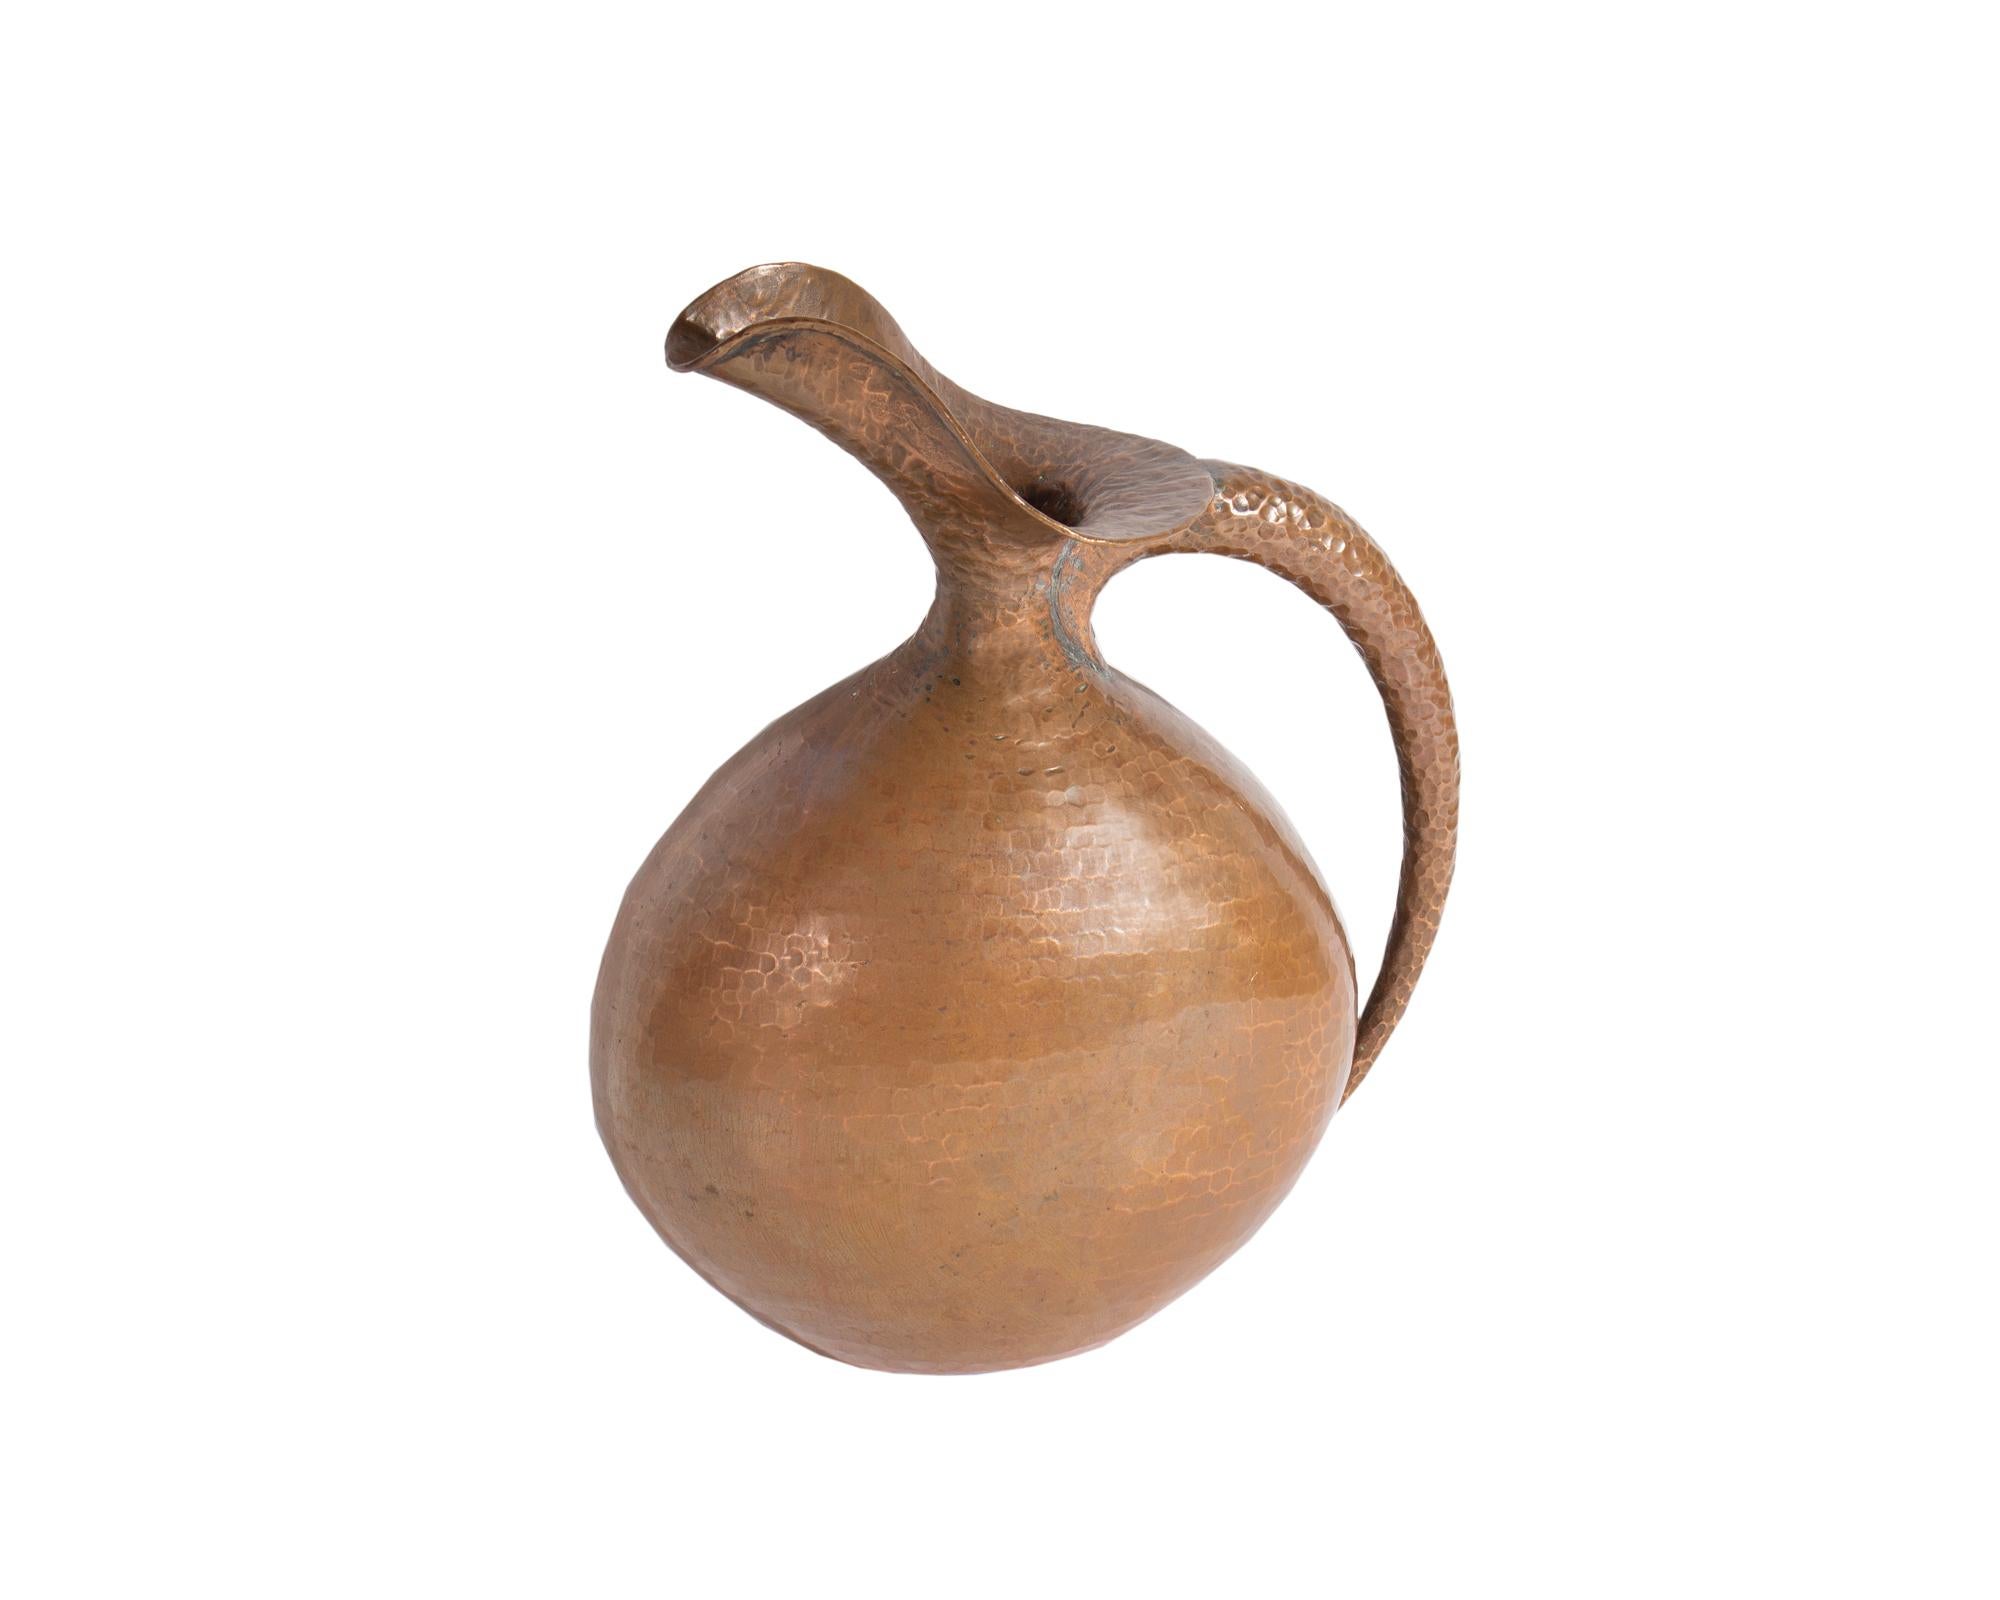 Ein Krug oder eine Kanne aus gehämmertem Kupfer, entworfen von dem italienischen Designer Egidio Casagrande (1911-1962). Dieser Krug hat einen runden Korpus und einen konisch zulaufenden Henkel an einer Seite. Die Unterseite des Kruges trägt die